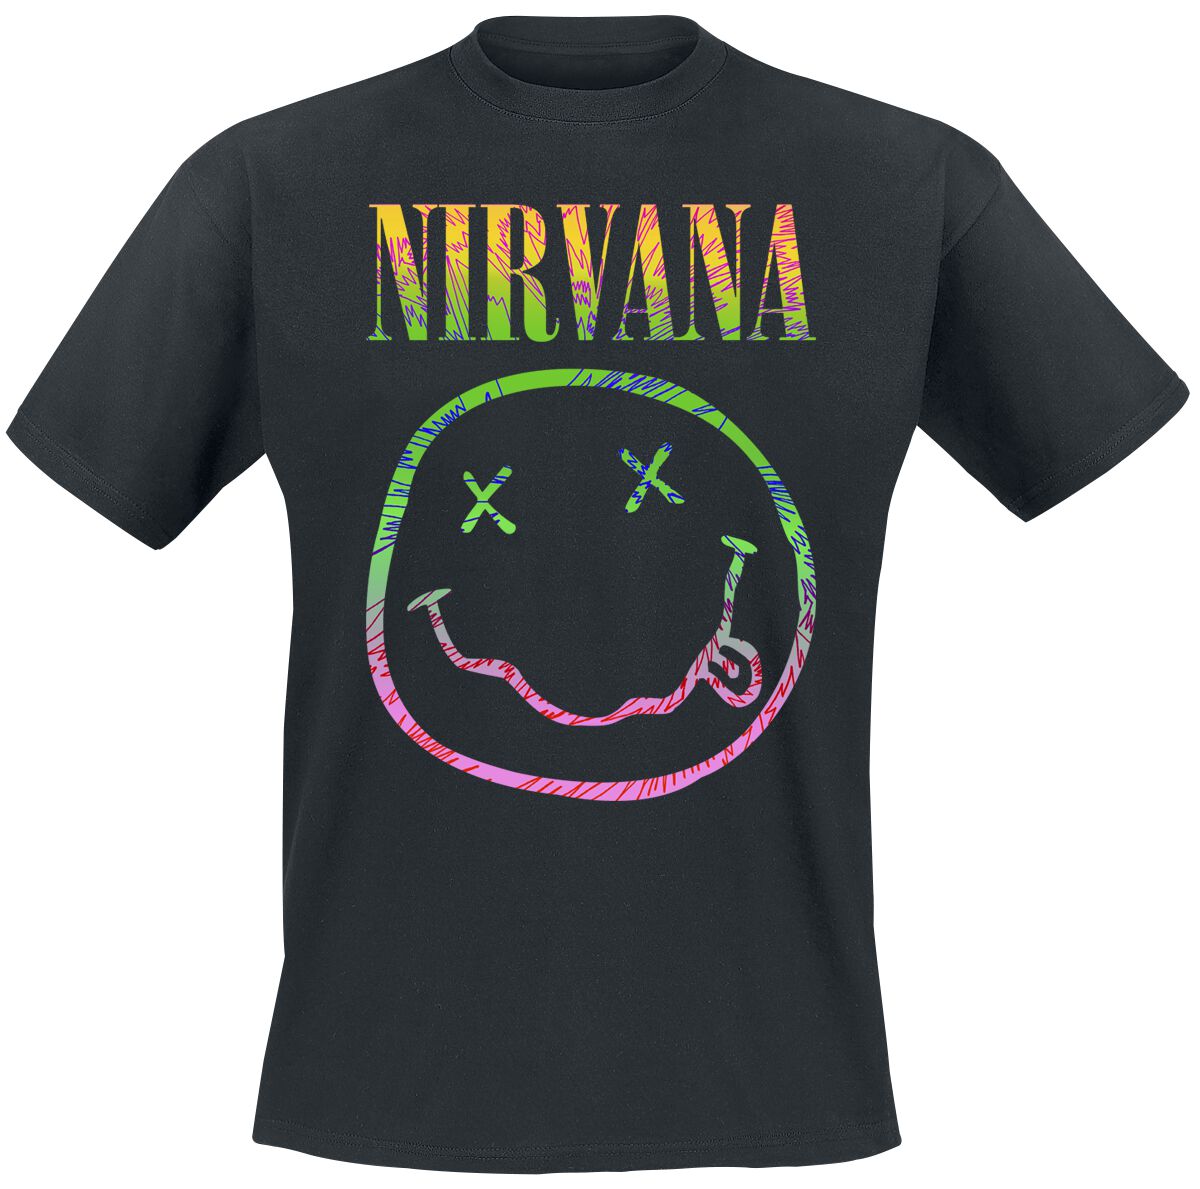 Nirvana T-Shirt - Sorbet Ray - S bis XXL - für Männer - Größe S - schwarz  - Lizenziertes Merchandise!